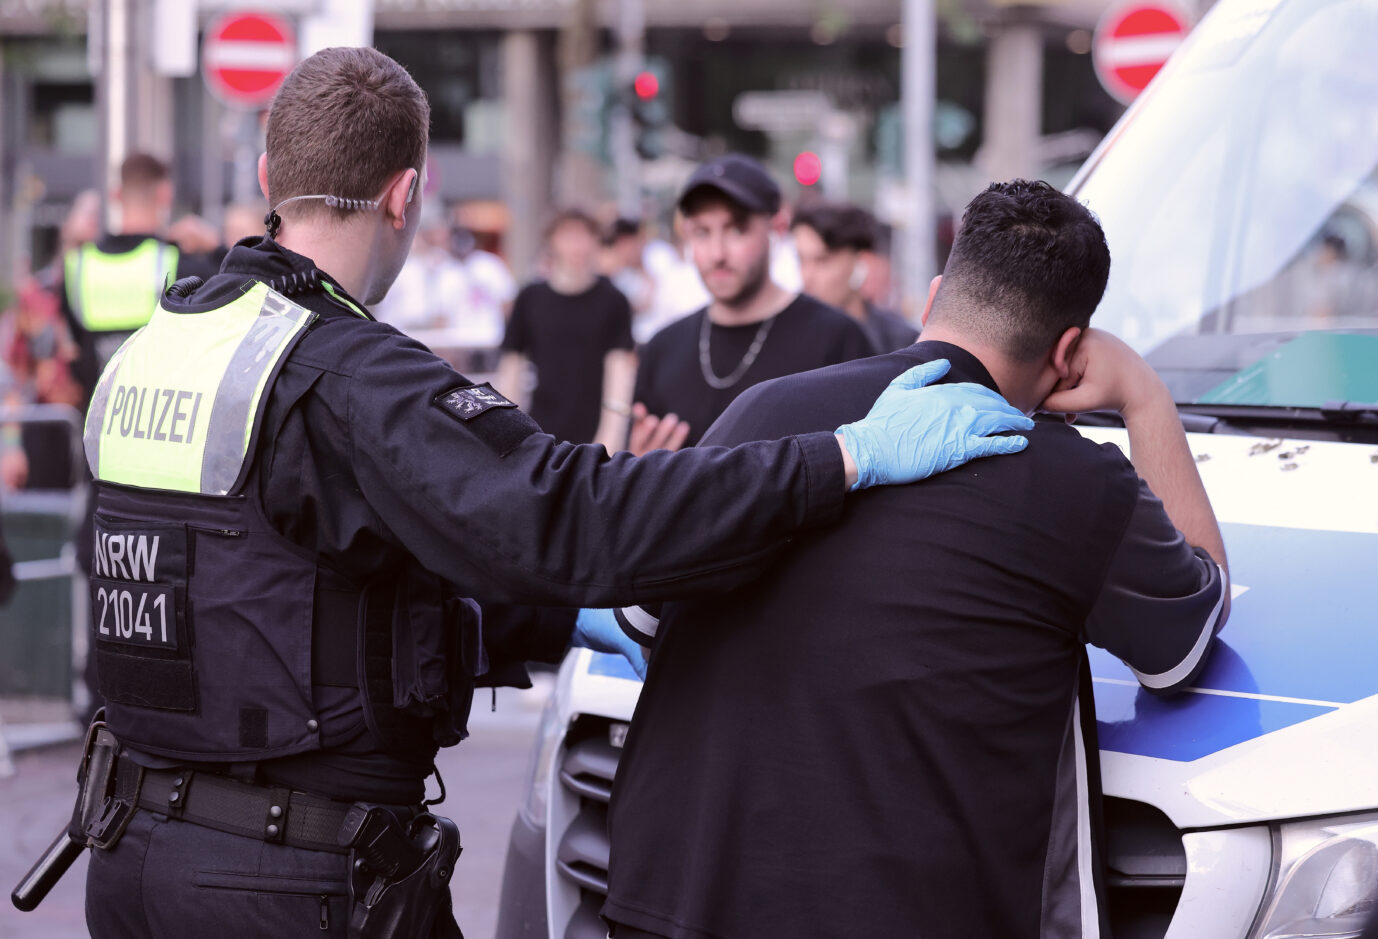 Polizisten durchsuchen die Taschen einer Person bei einer Polizeikontrolle. Die Polizei hat in mehreren Städten in Nordrhein-Westfalen kontrolliert und nach verbotenen Gegenständen wie Messern, scharfen Waffen oder Drogen gesucht. In Hamburg hält ein 18jähriger Afghane seit Jahren die Behörden auf Trab. INtensivtäter hat gut lachen